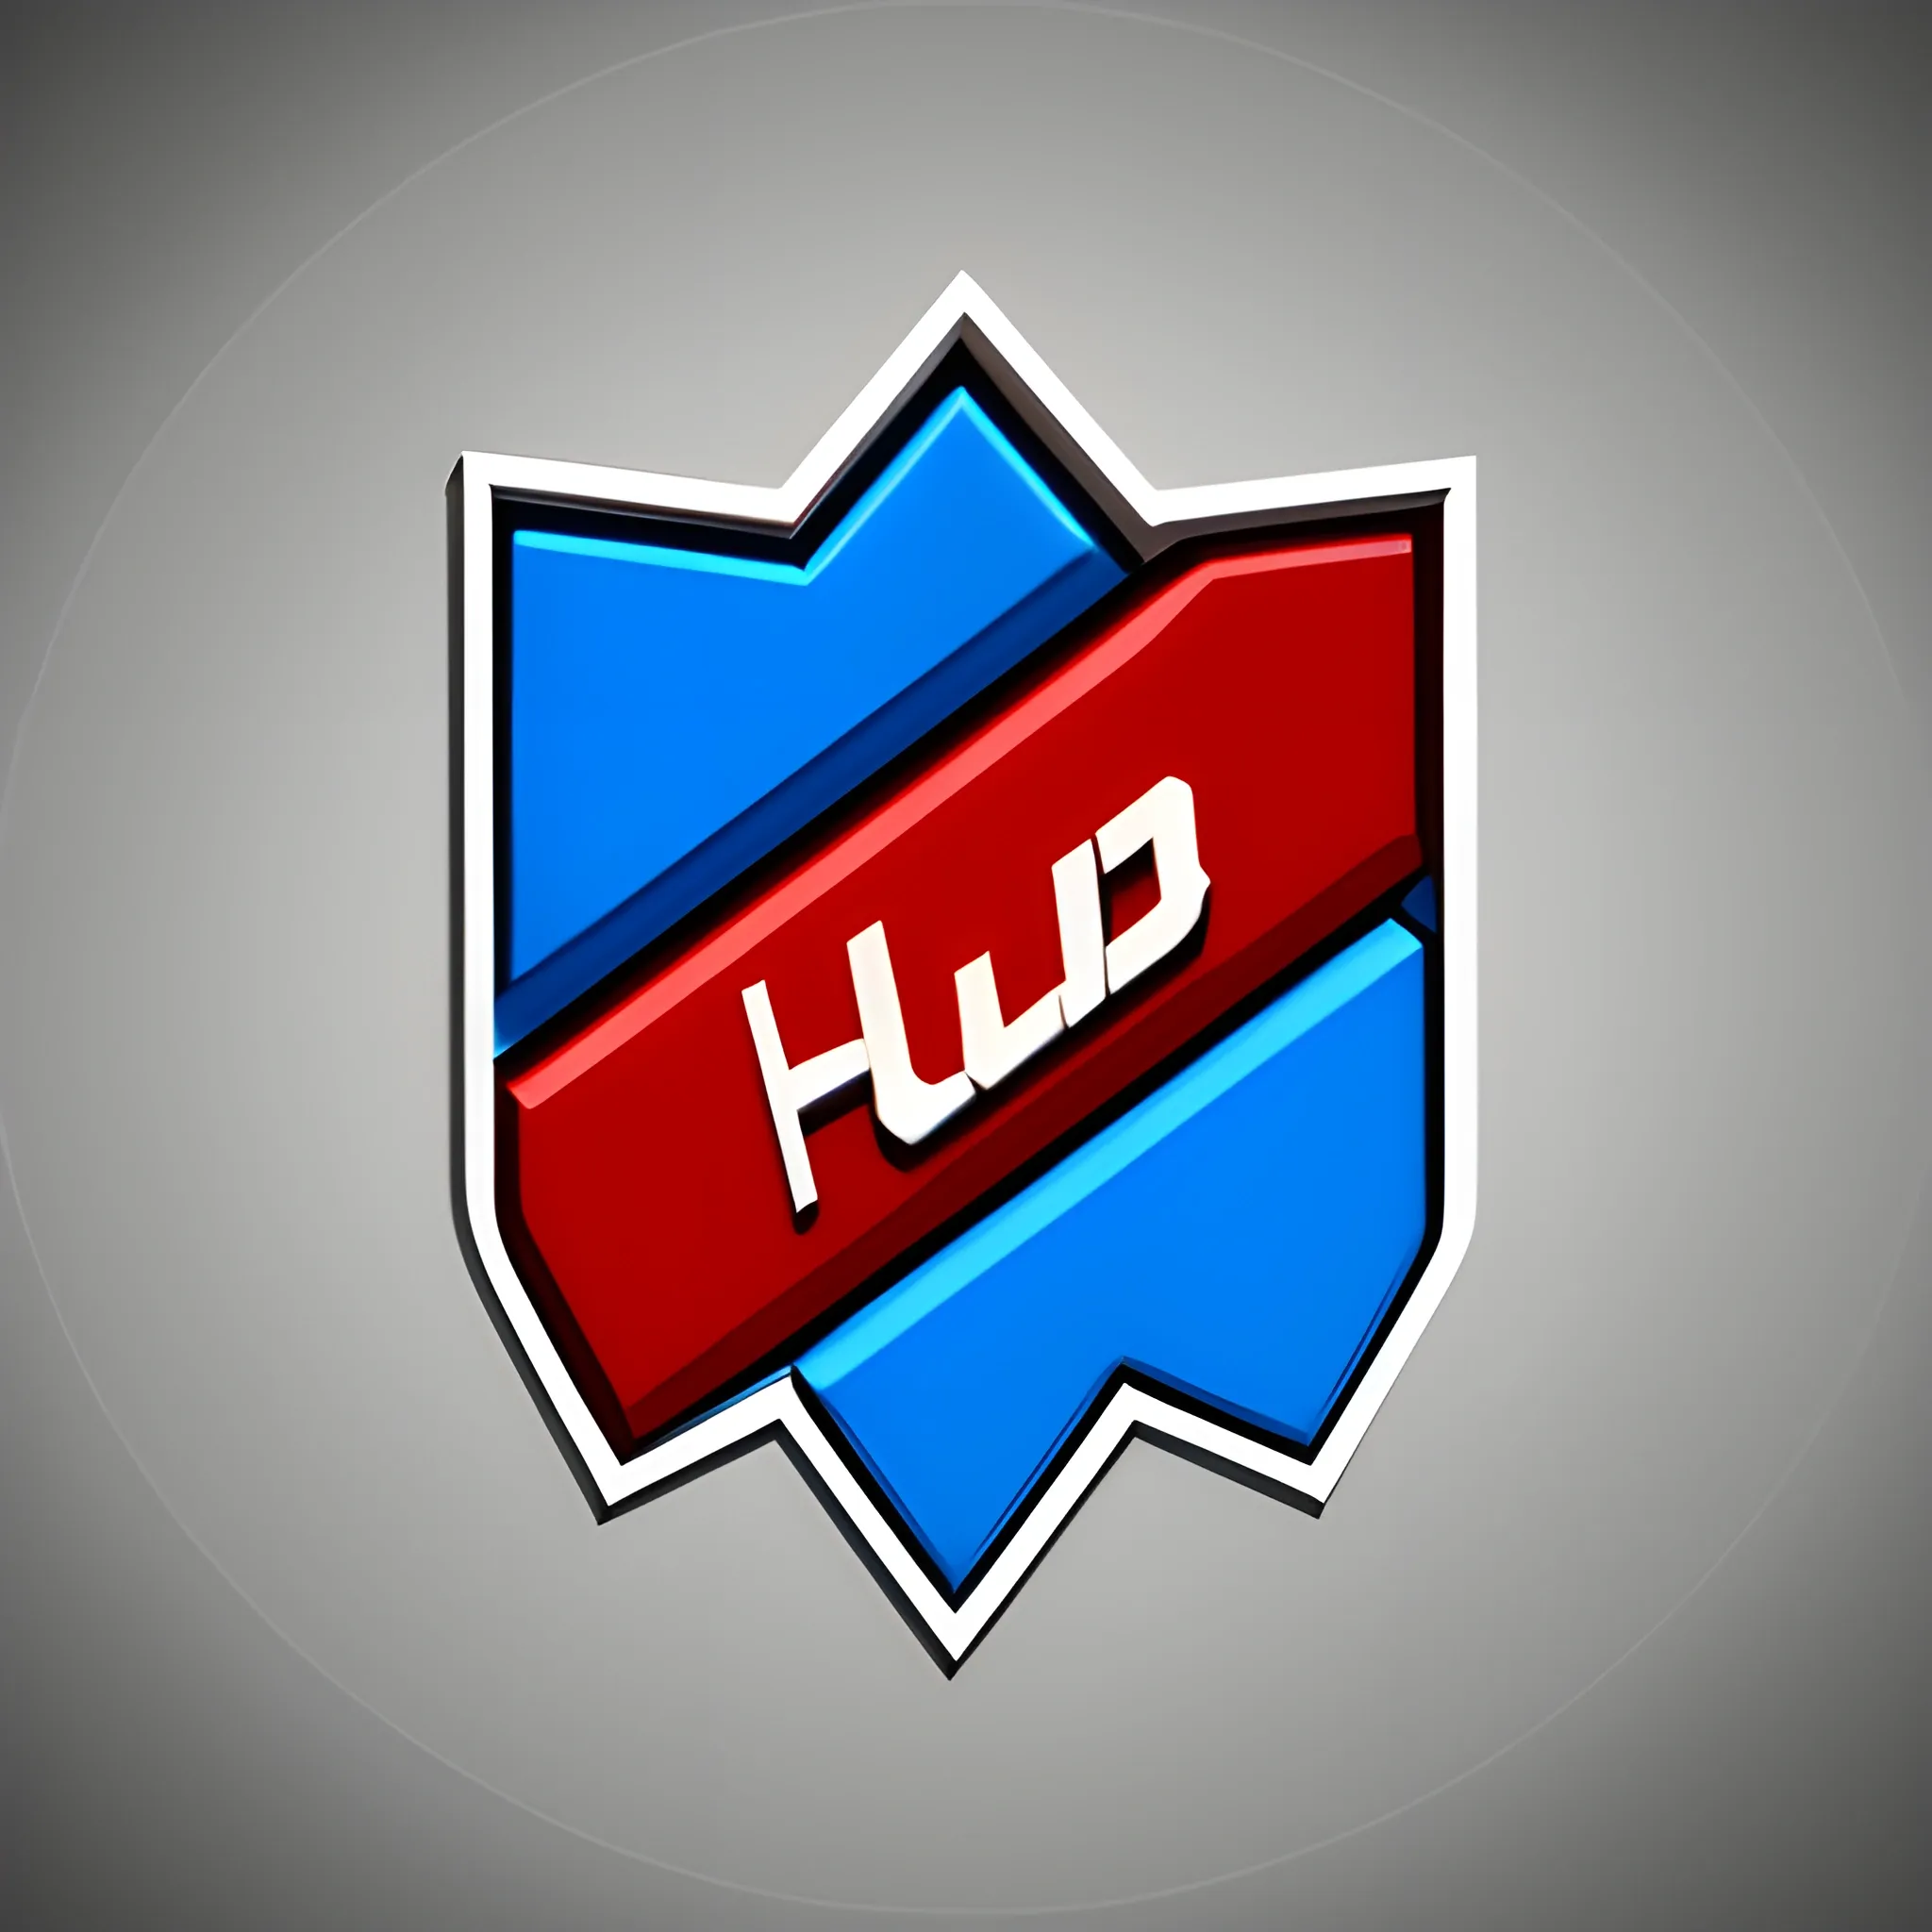 Huba Team logo, 3D